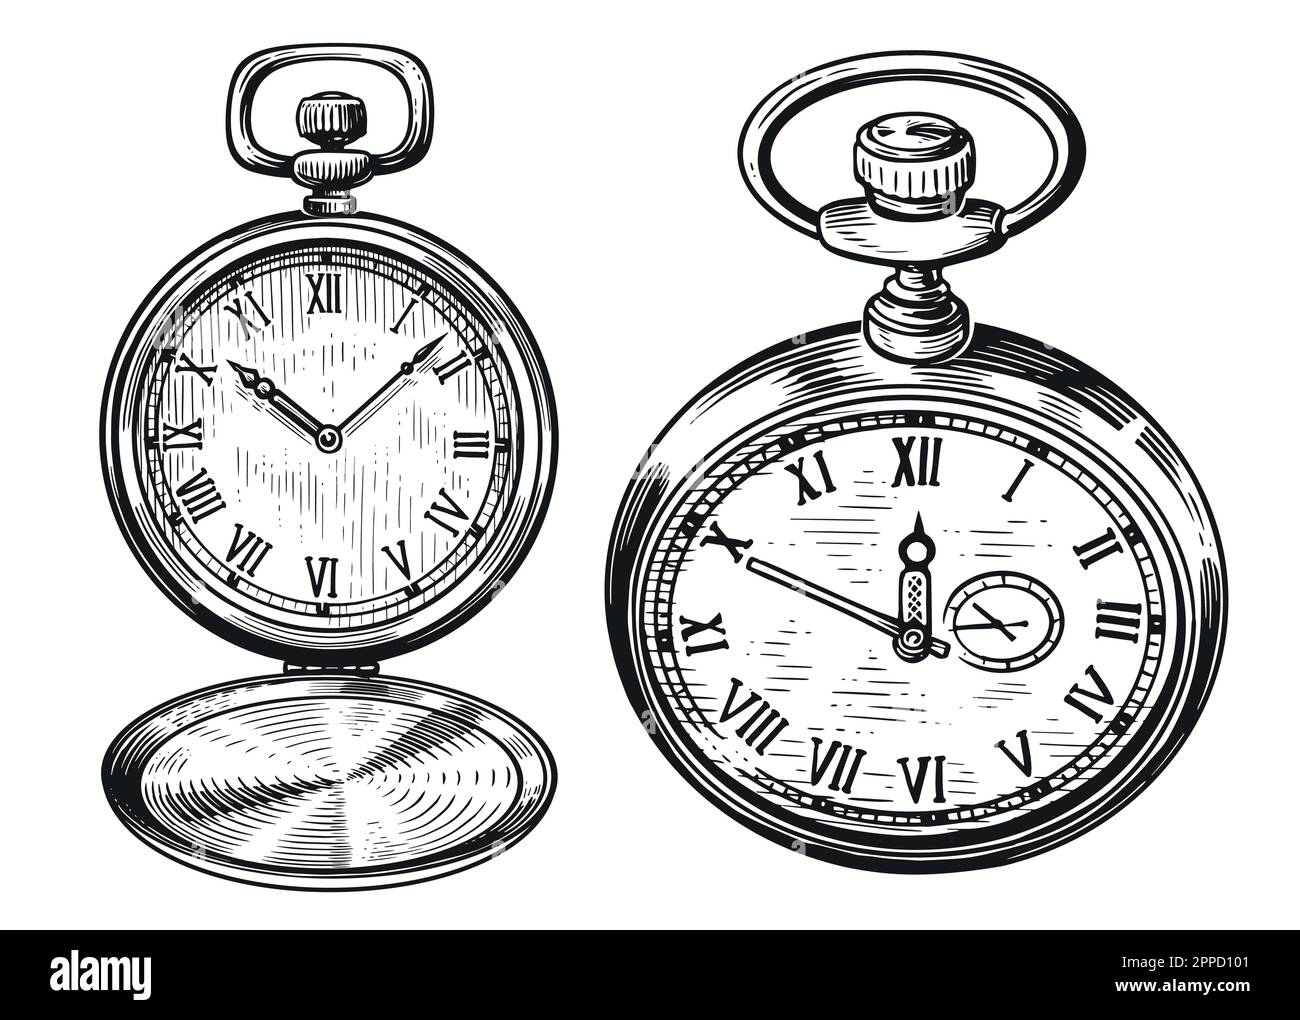 Montre rétro de poche. Ancienne horloge vintage isolée. Illustration d'esquisse dessinée à la main dans un style de gravure ancien Illustration de Vecteur